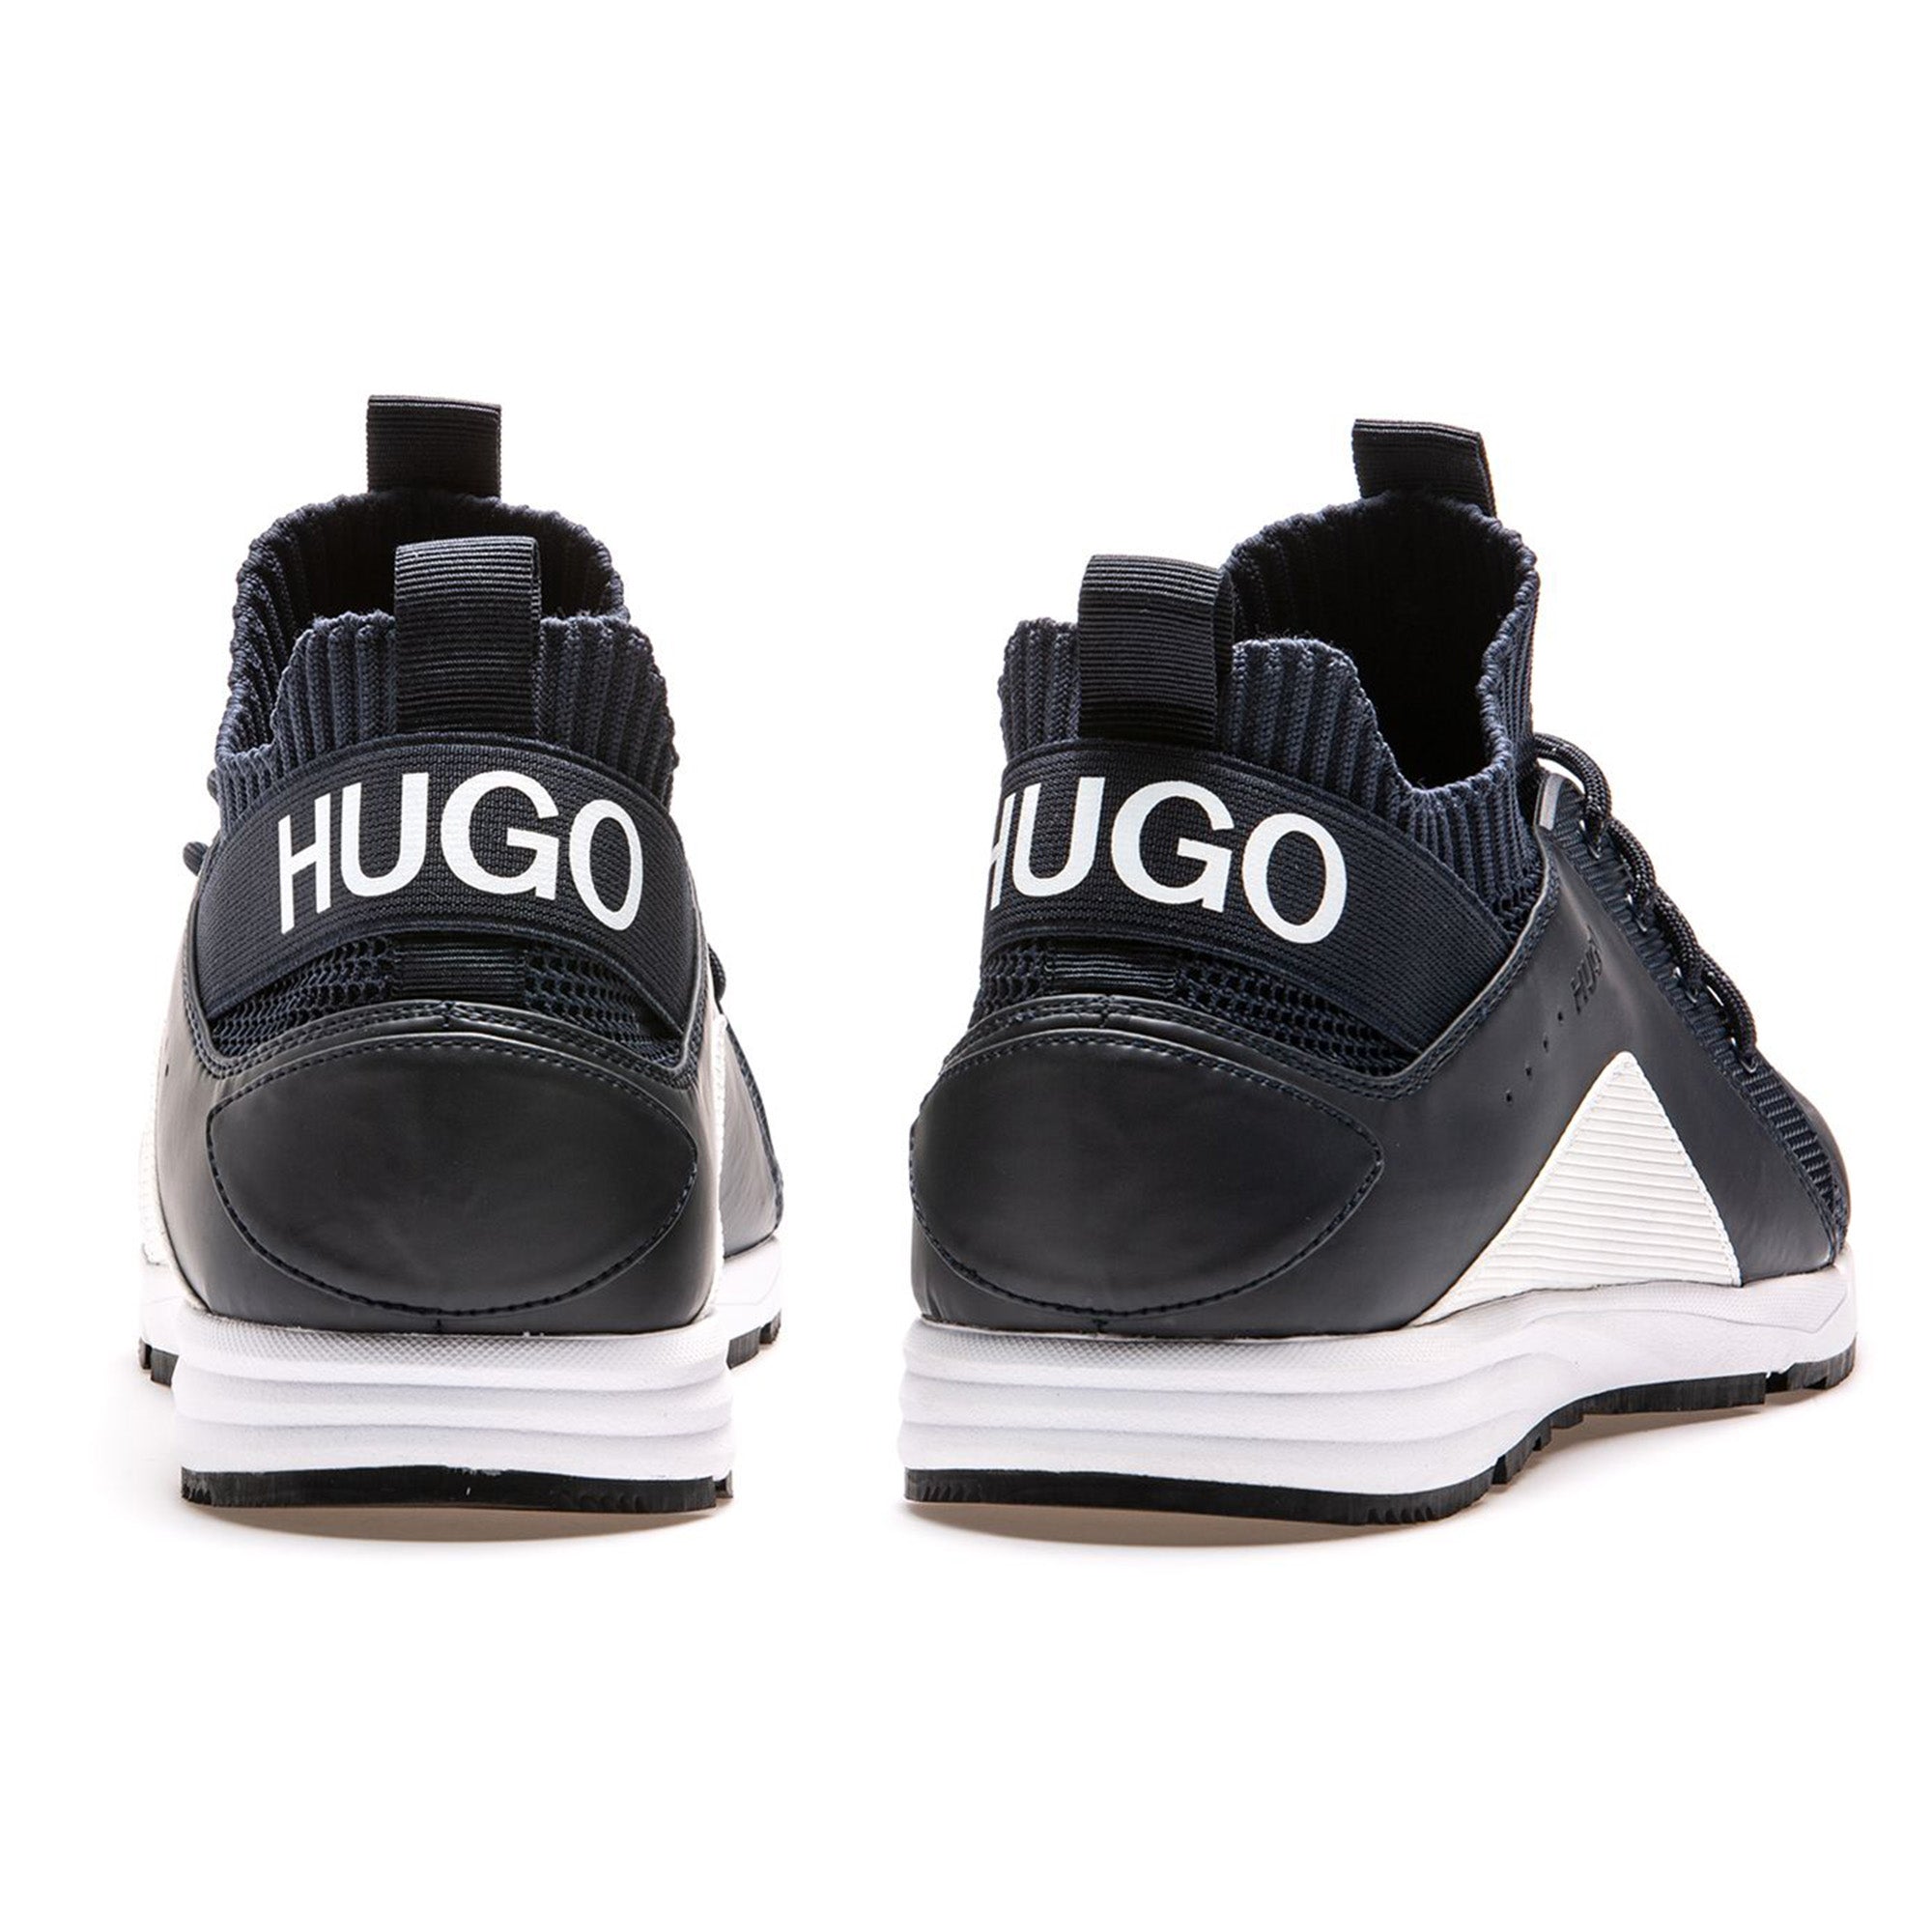 hugo hybrid